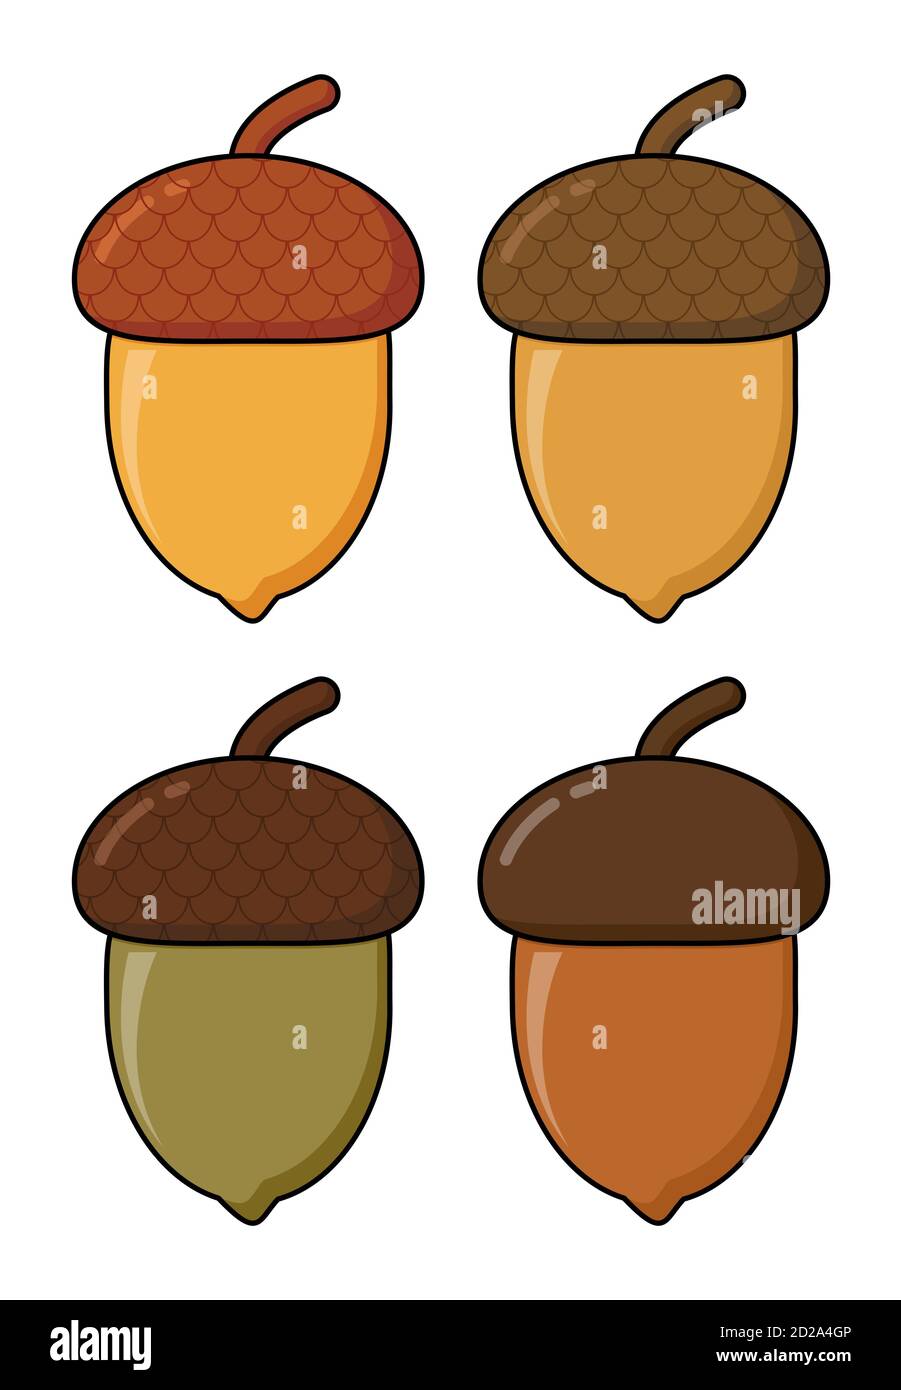 Vettore cartoon Acorn isolato su bianco. Frutti di quercia con icona a forma di cappello in diversi colori. Illustrazione di ghiande di noce di quercia autunnale con shel Illustrazione Vettoriale